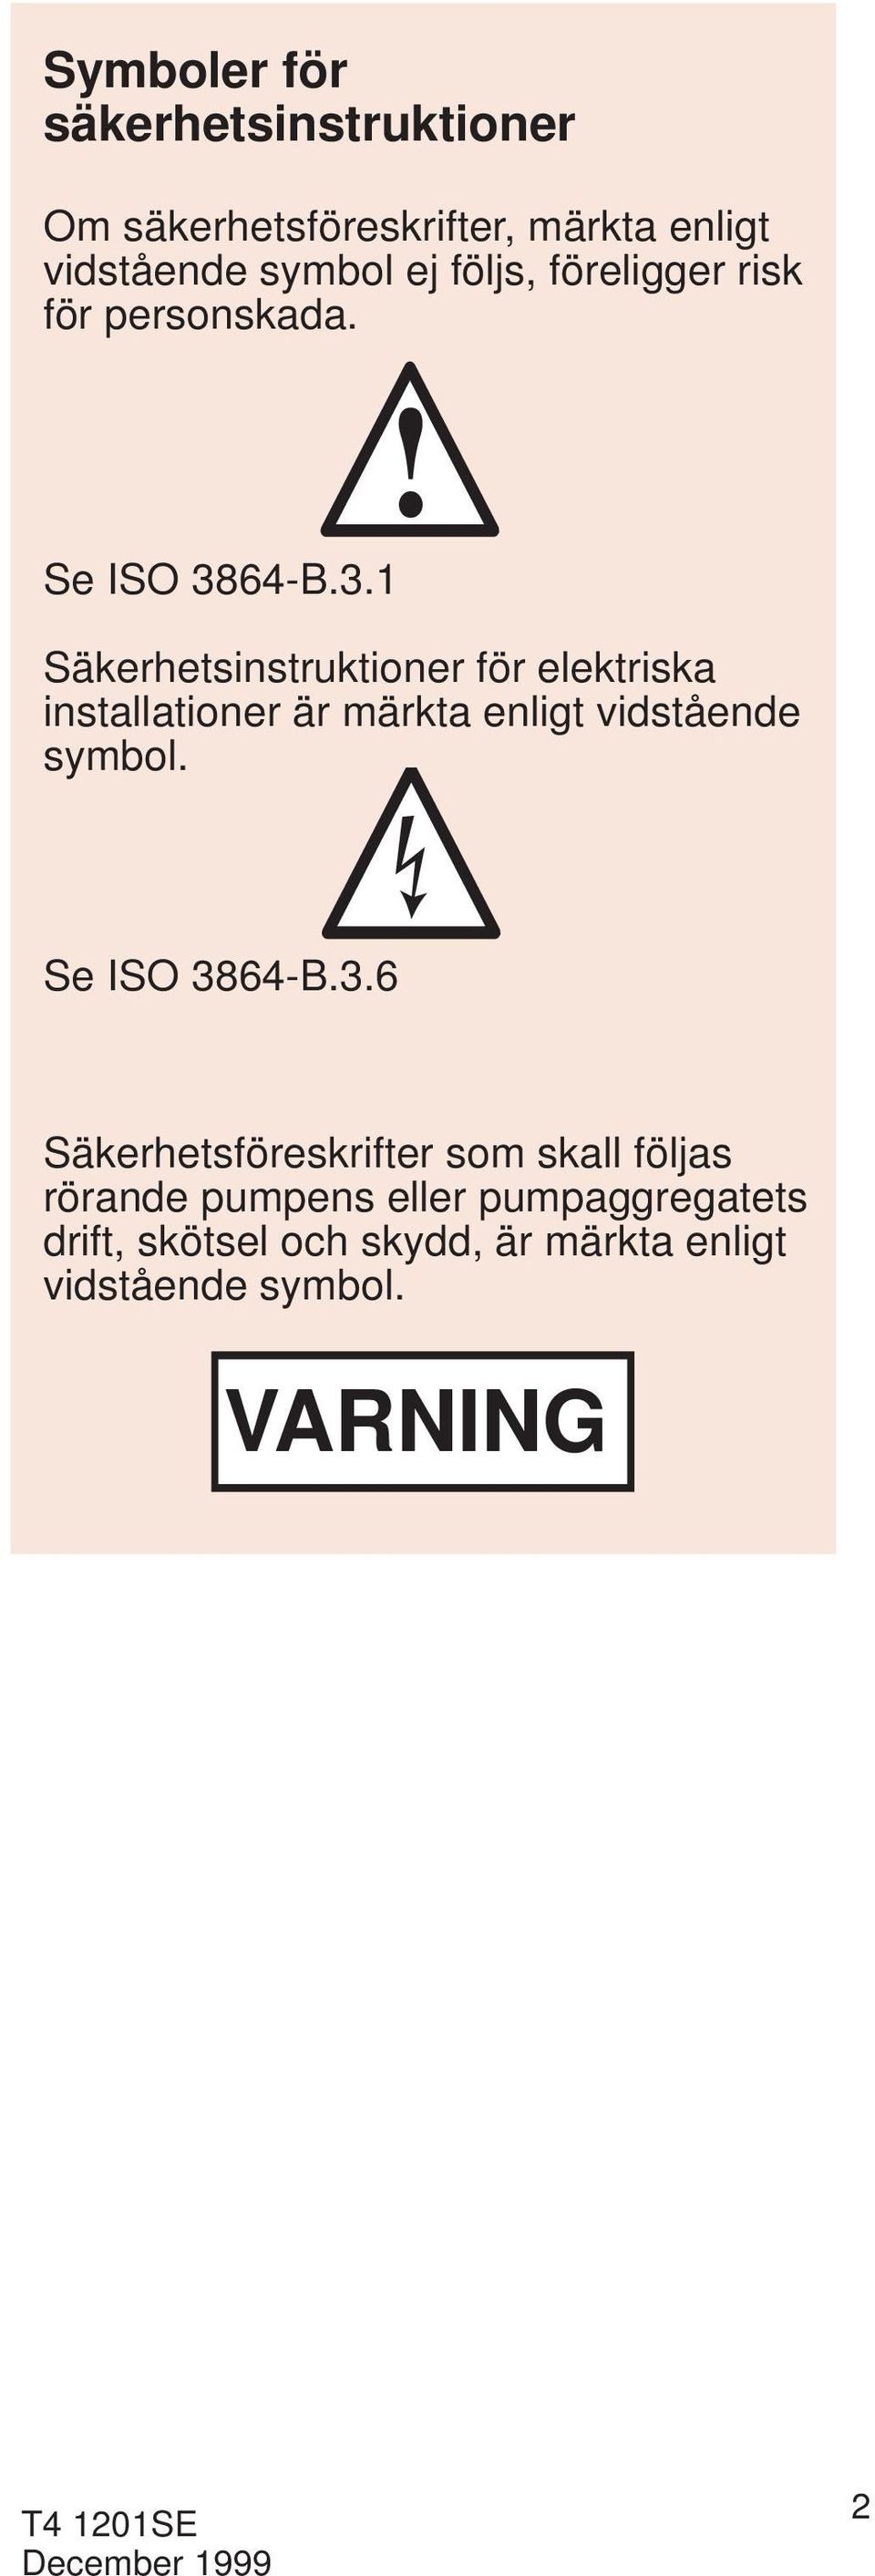 . 86-B.. Säkerhetsinstruktioner för elektriska or where electrical safety is involved, installationer är märkta enligt vidstående symbol. with Se see ISO ISO 86-B.